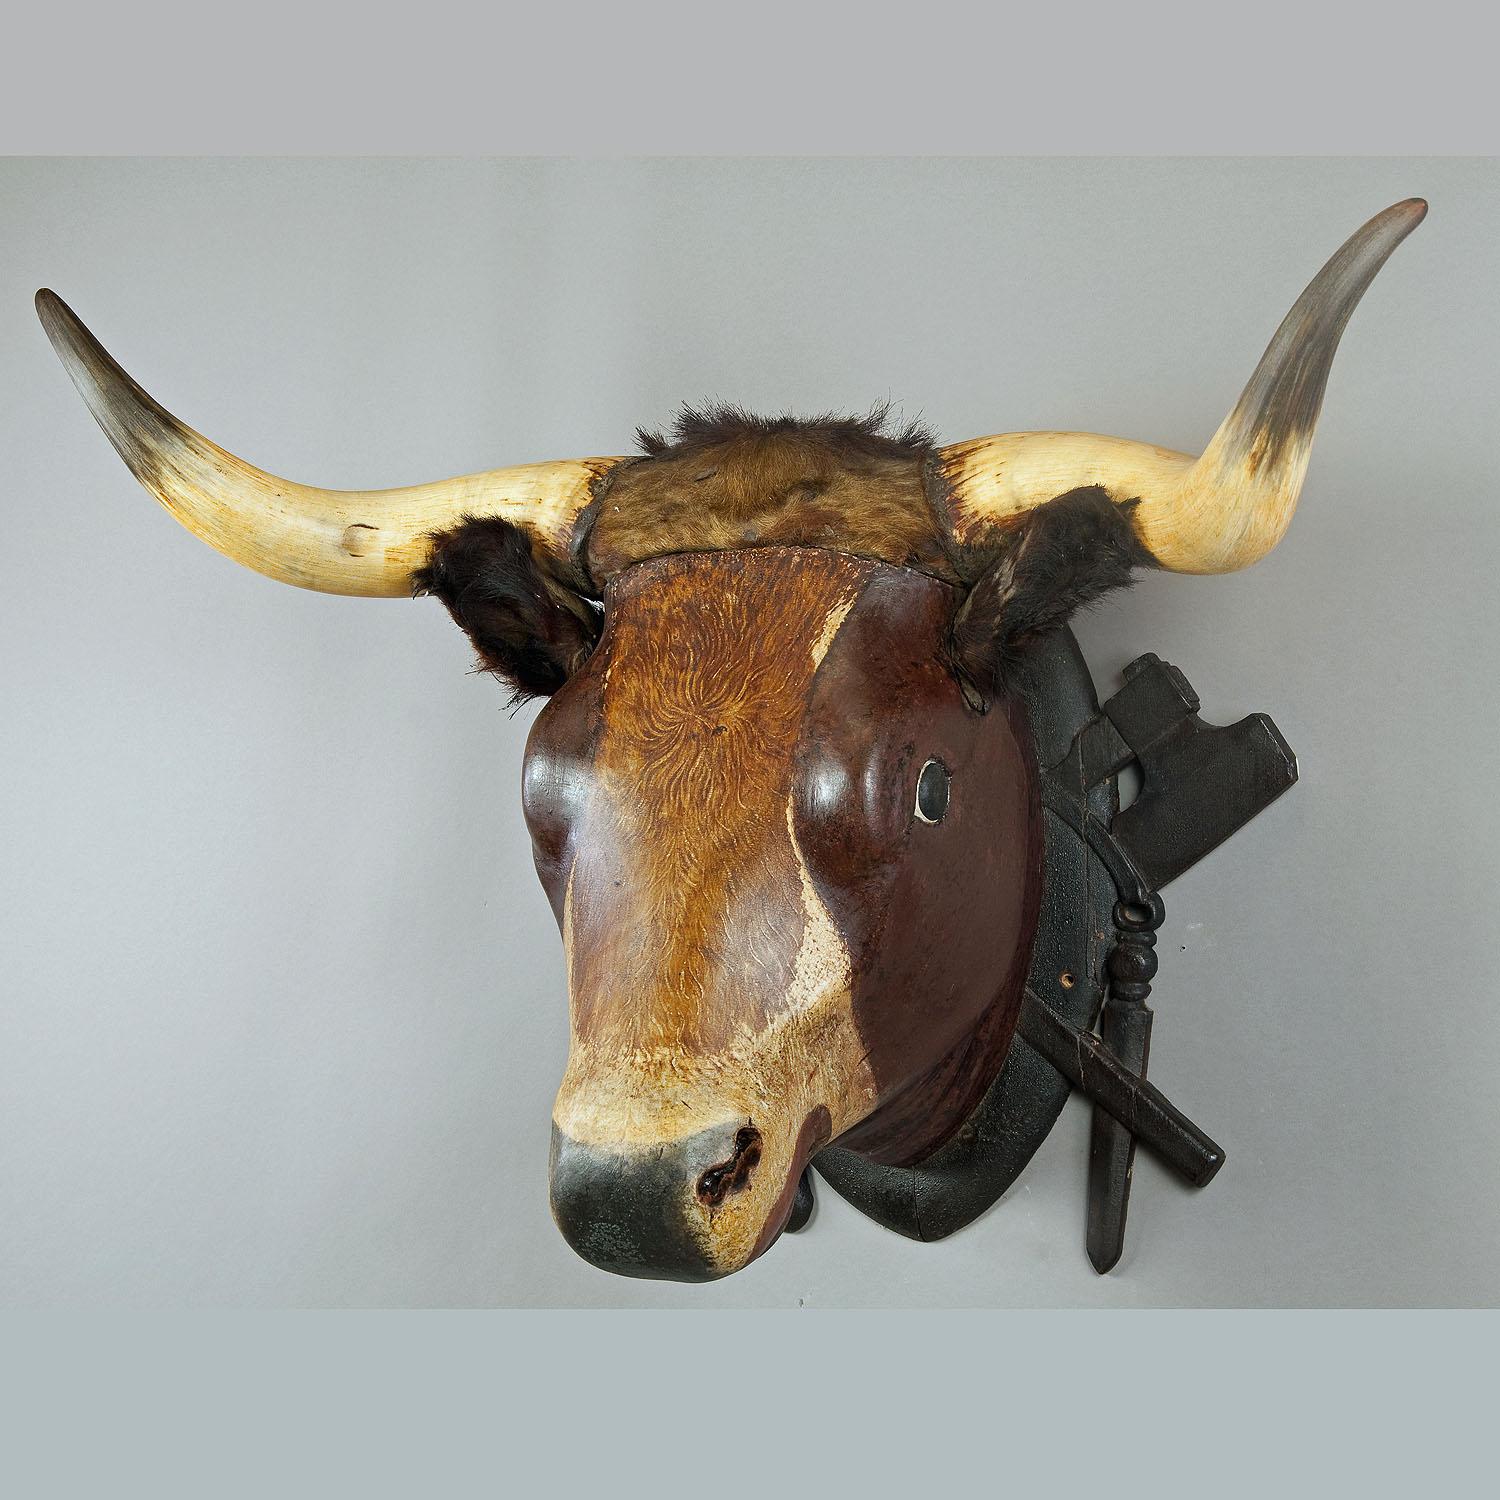 Très grande tête de taureau en bois sculptée provenant d'une boucherie, vers 1880

Très grande tête de taureau sculptée en bois. Ancienne décoration de magasin dans une boucherie du sud de l'Allemagne. Sculptée à la main vers 1880, les oreilles et